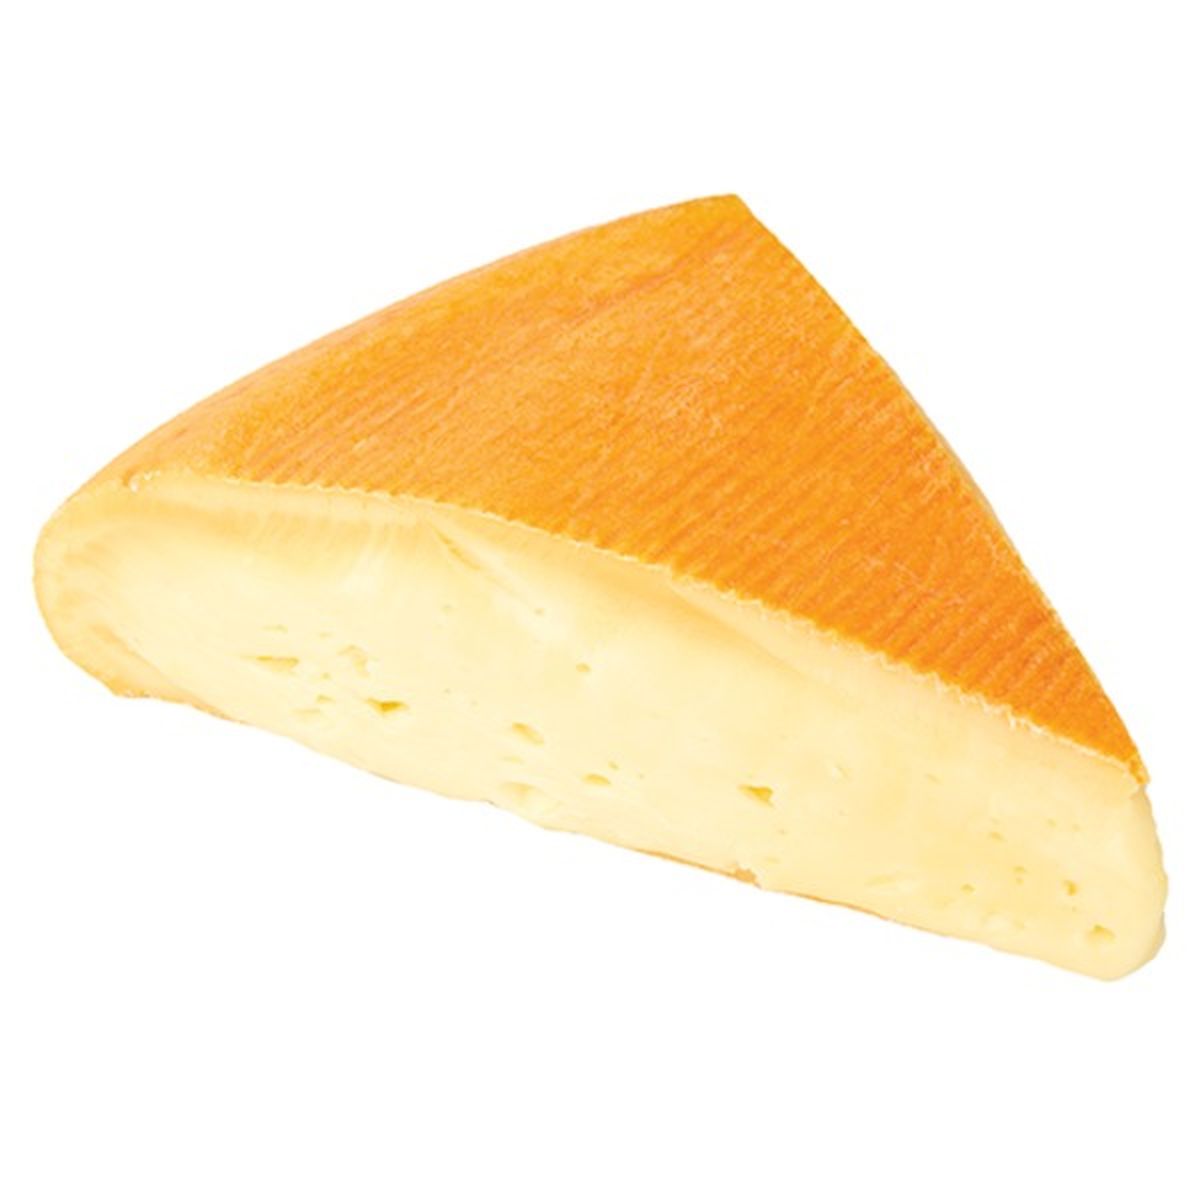 Calories in Wegmans Showmmmz Cheese